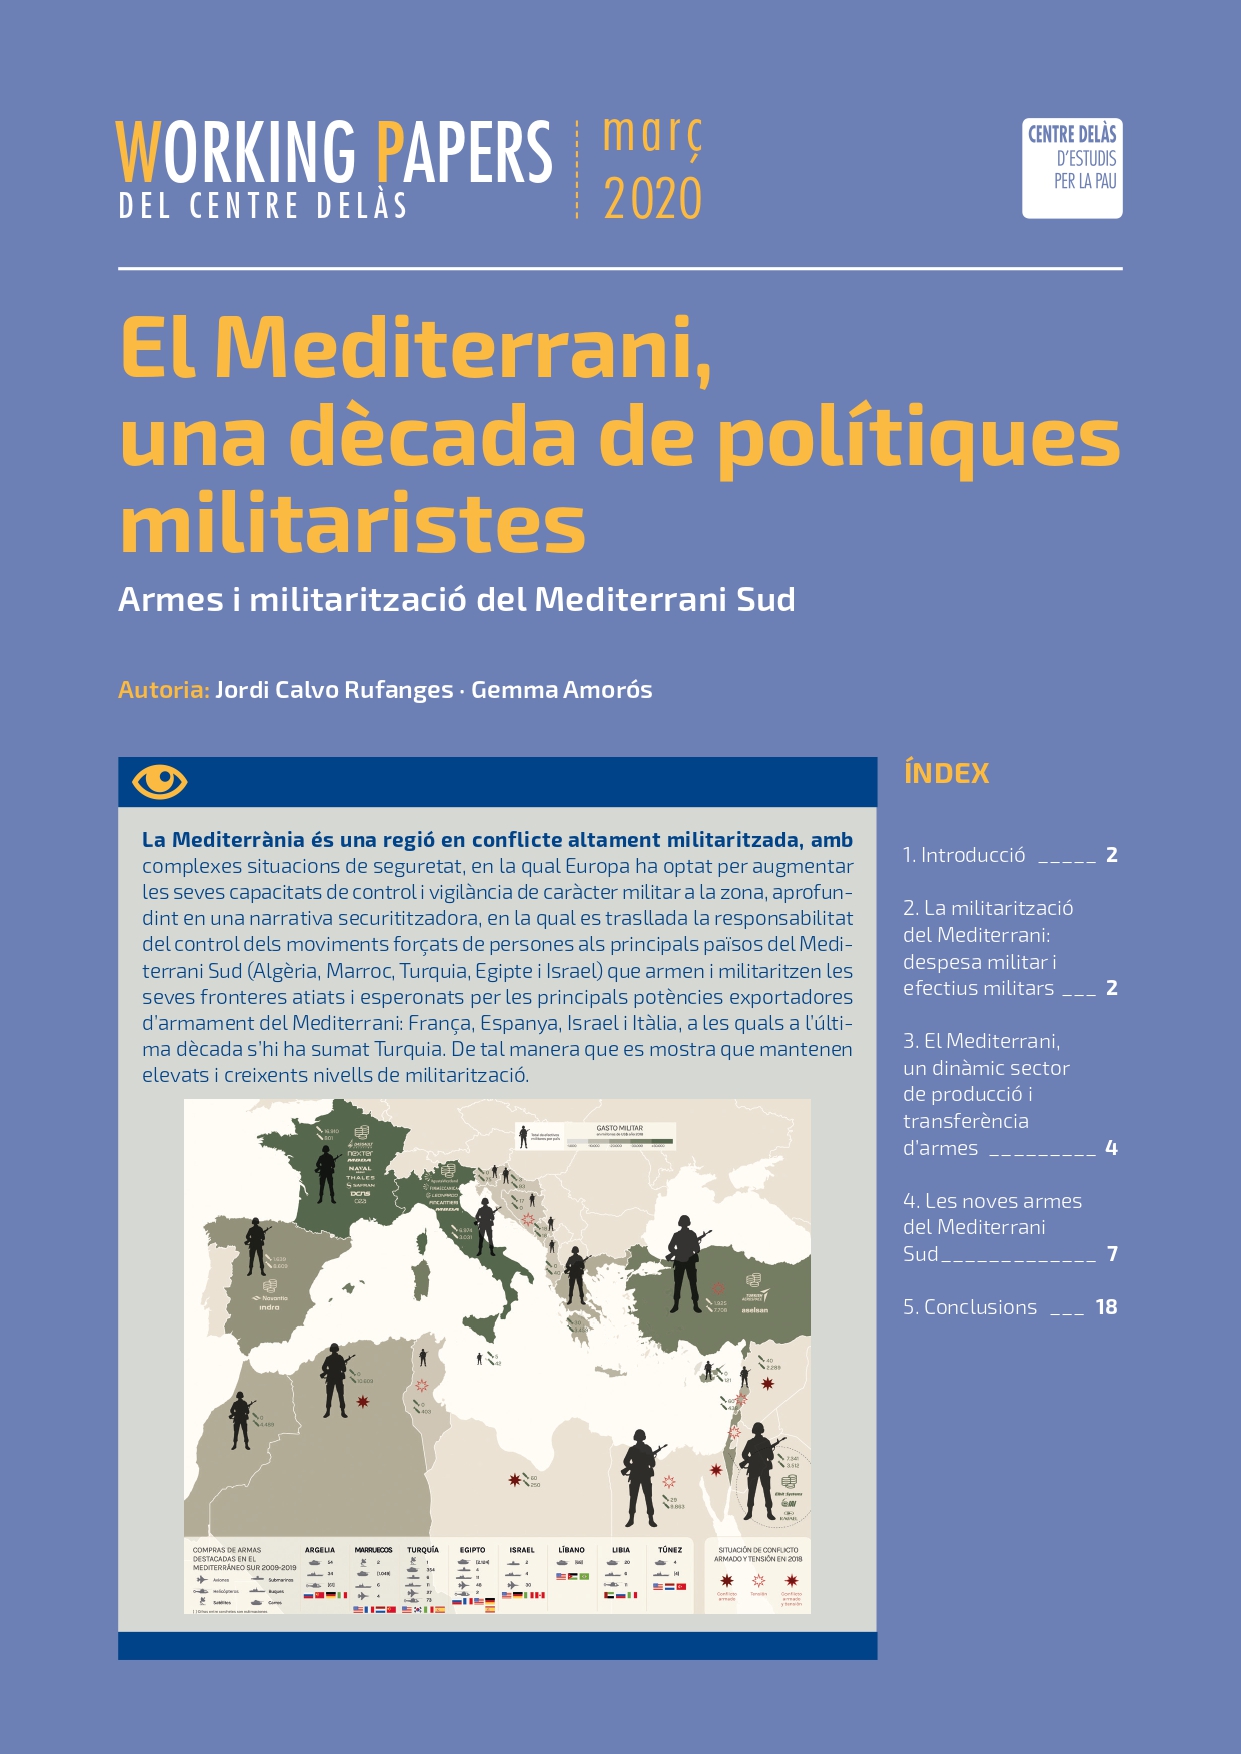 Working Paper “El Mediterrani, una dècada de polítiques militaristes. Armes i militarització del Mediterrani Sud”